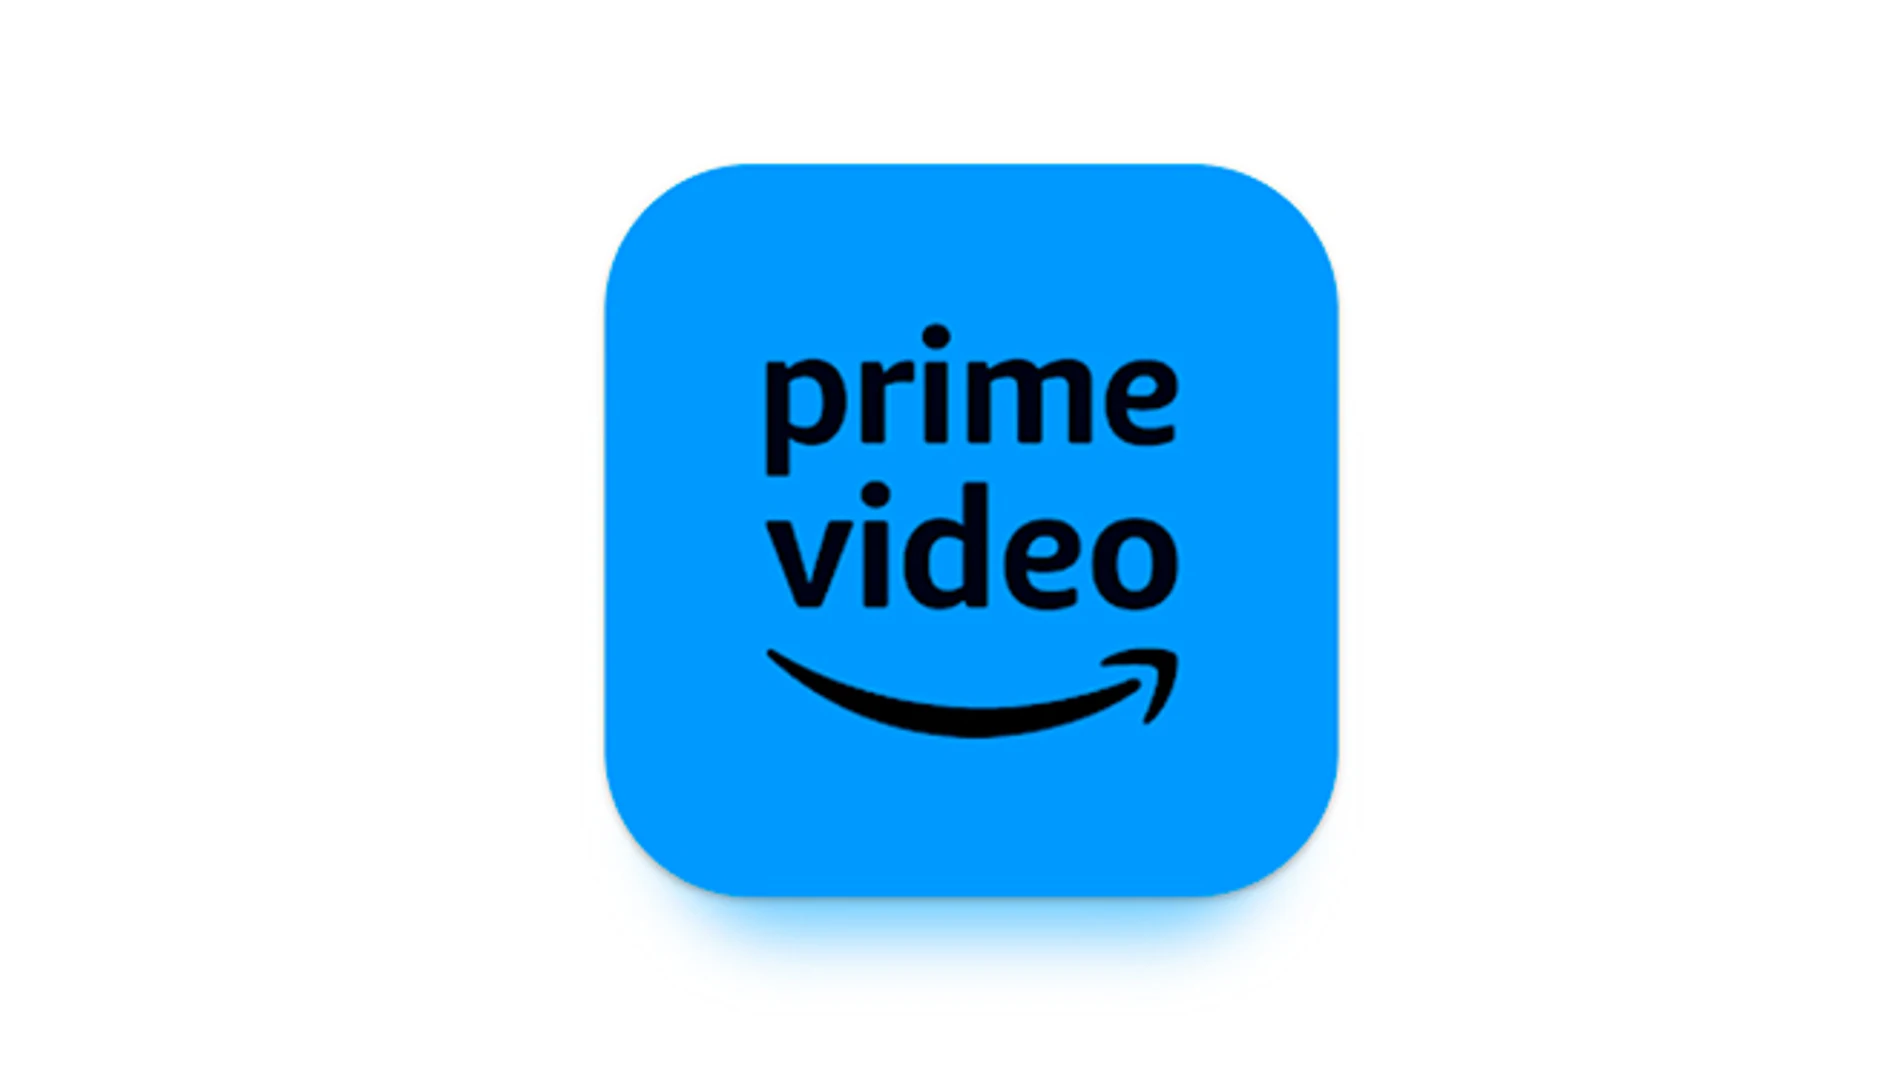 Amazon planea lanzar una suscripción con anuncios para Prime Video, según The Wall Street Journal.